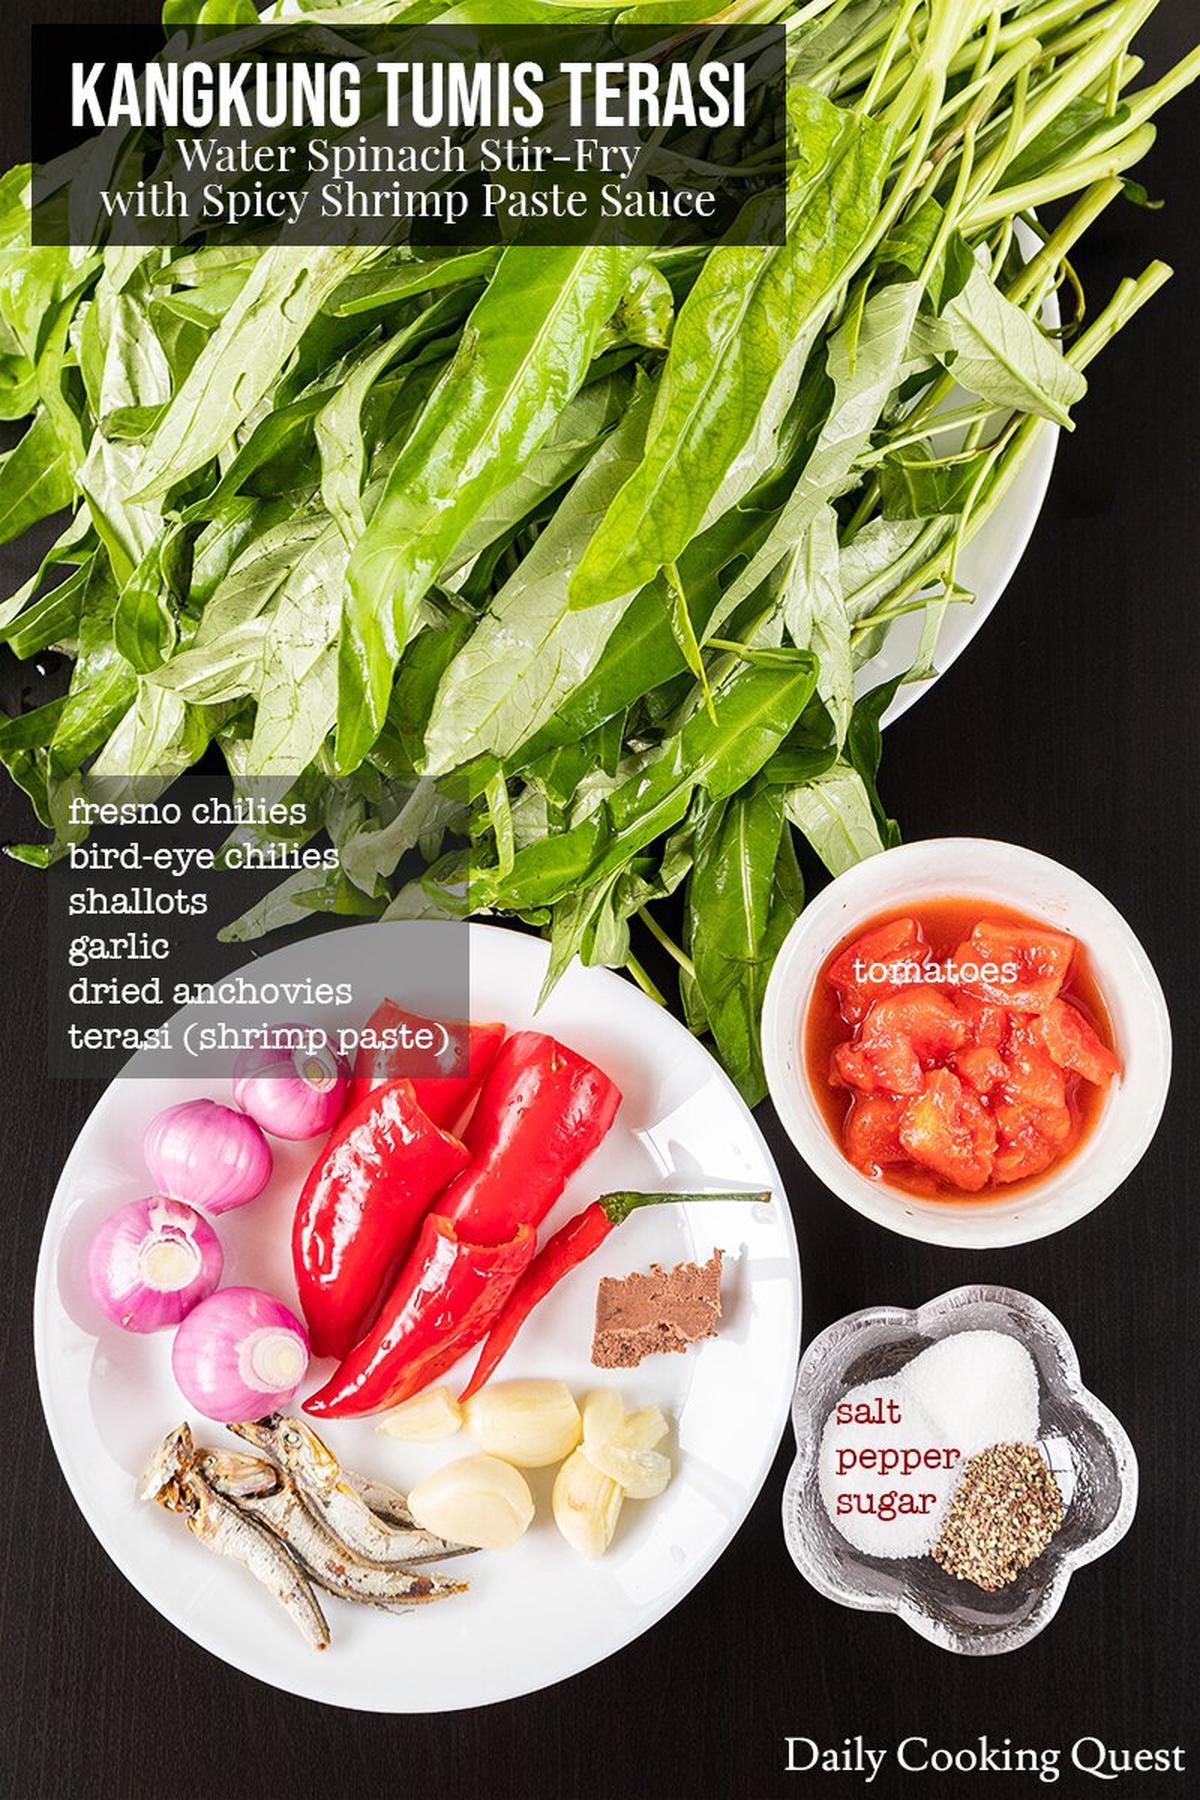 Ingredients to prepare kangkung tumis terasi.